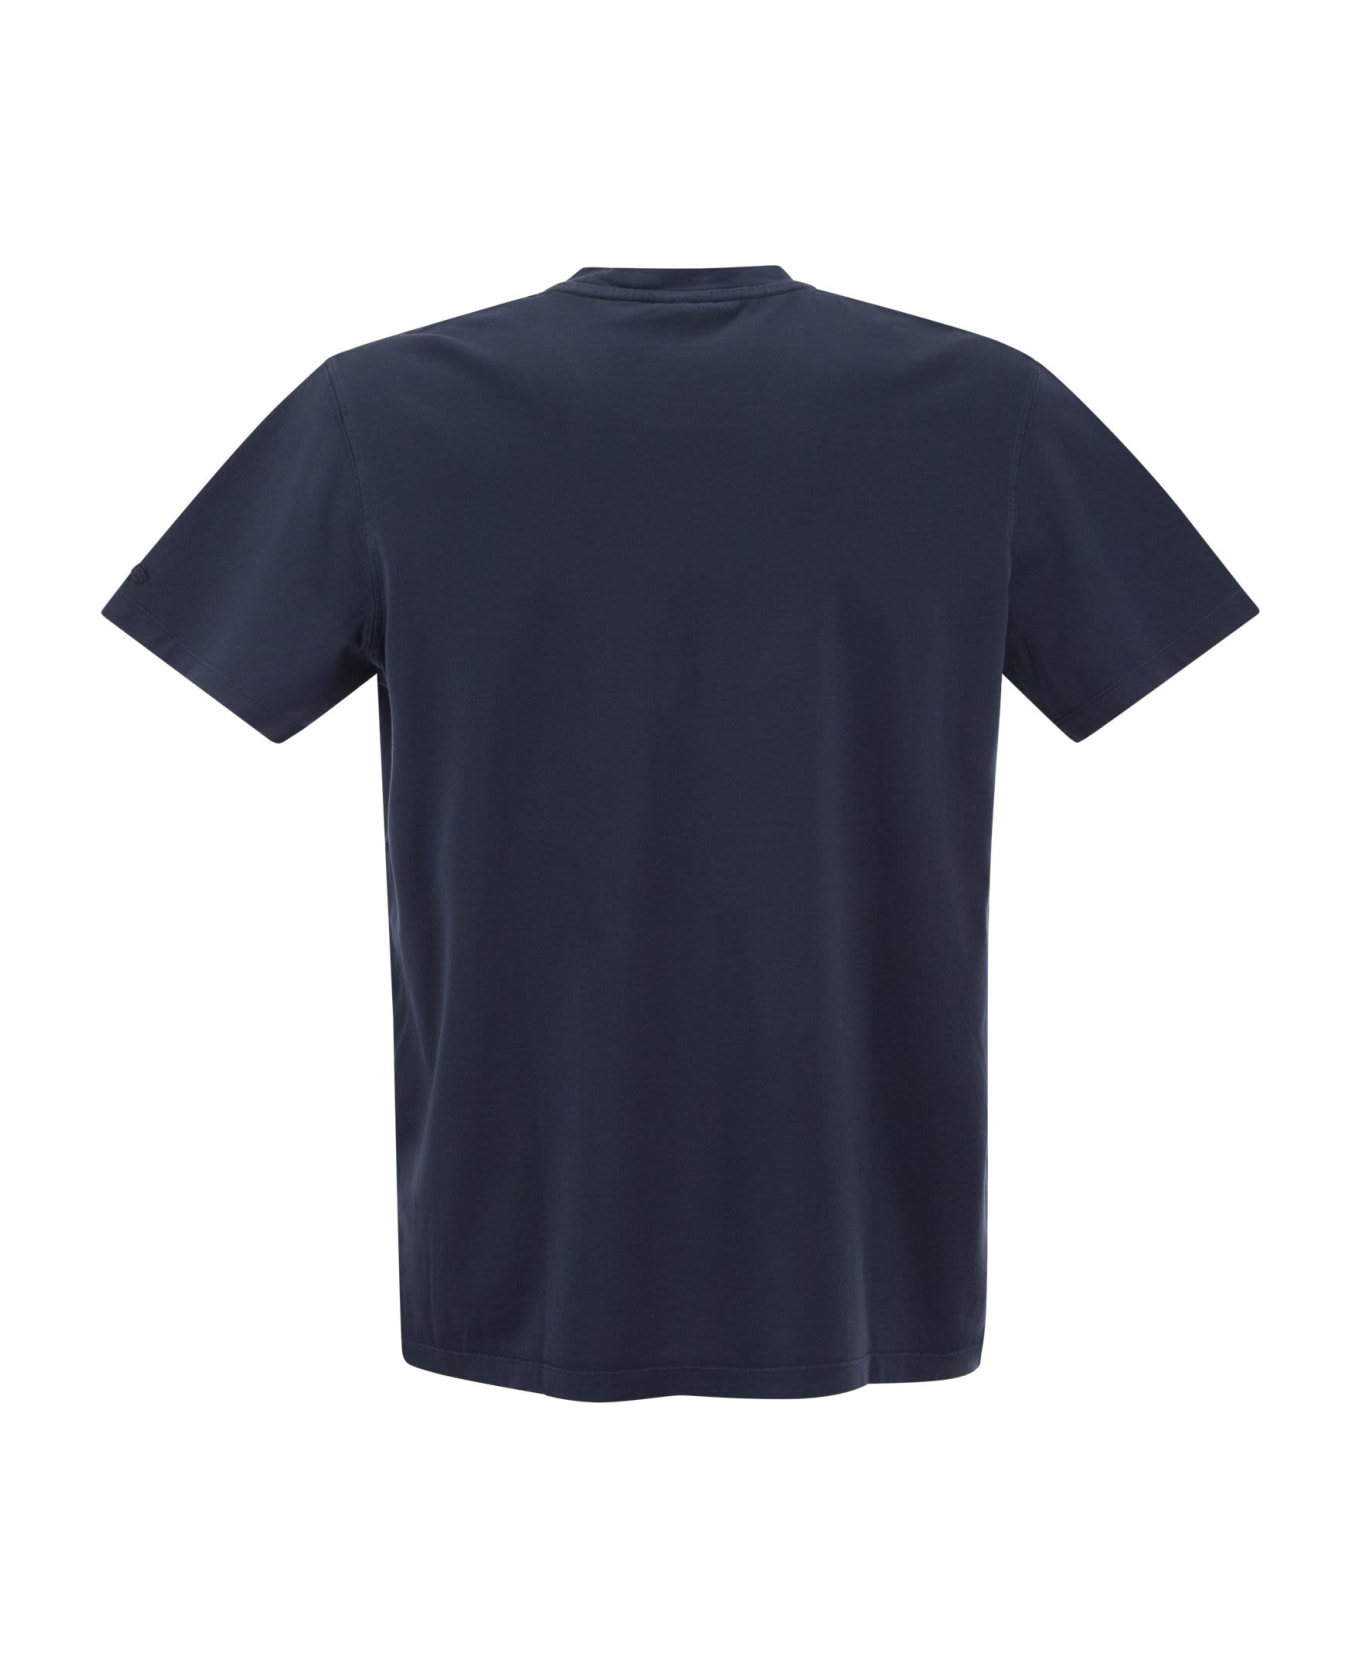 Paul&Shark Garment Dyed Cotton Jersey T-shirt - Blue